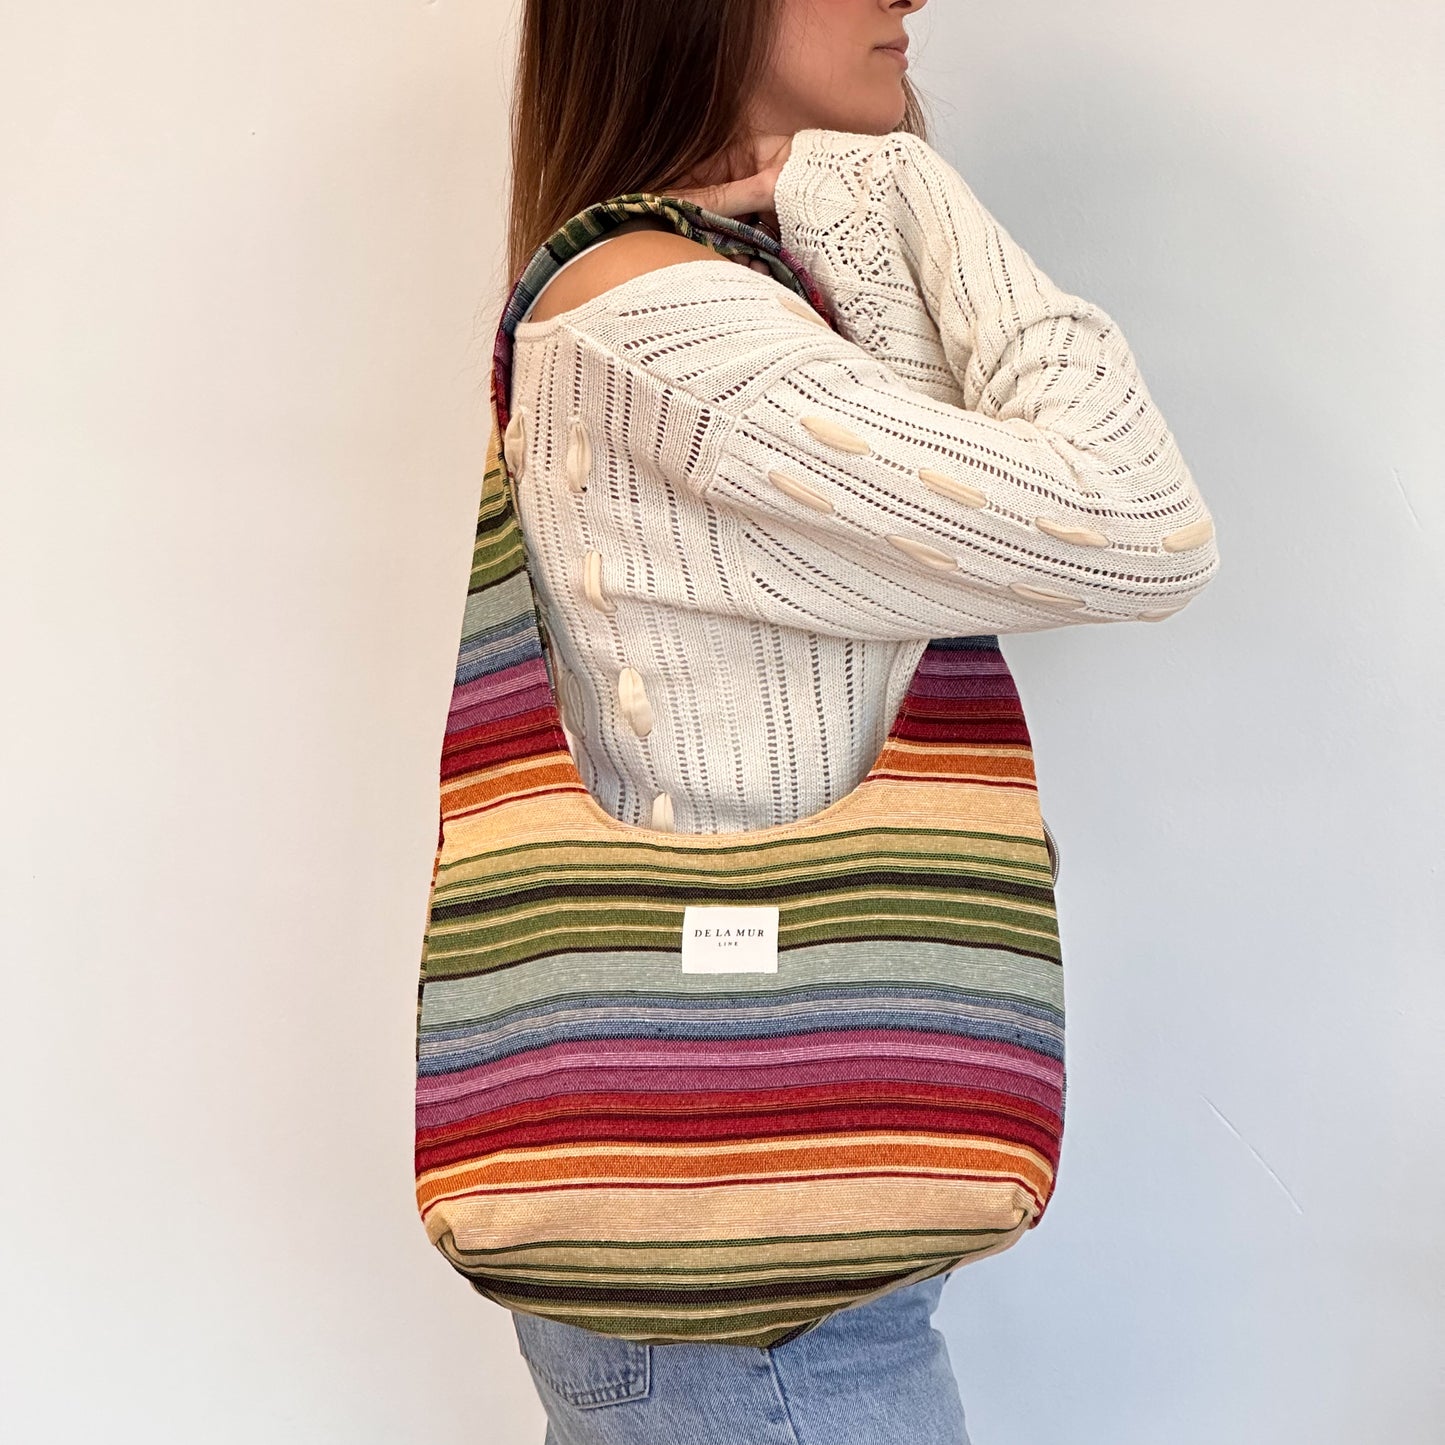 Ovaalvormige tas strepen kleurrijk 